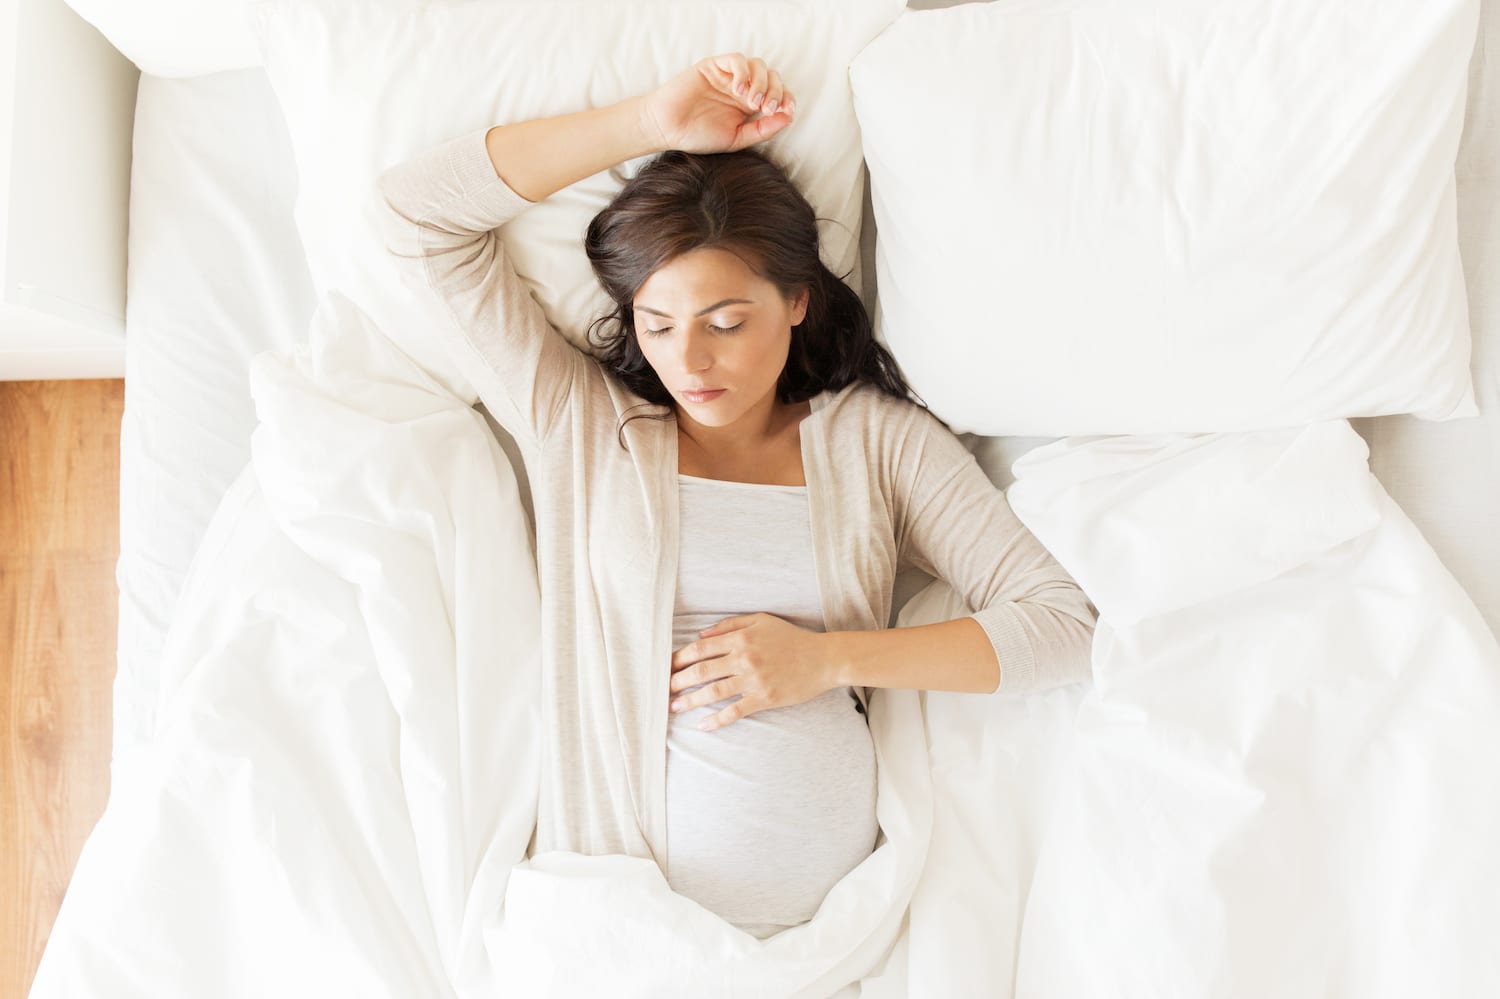 https://www.sleepfoundation.org/wp-content/uploads/2021/06/Sleep-Tips-for-Pregnant-Women.jpg